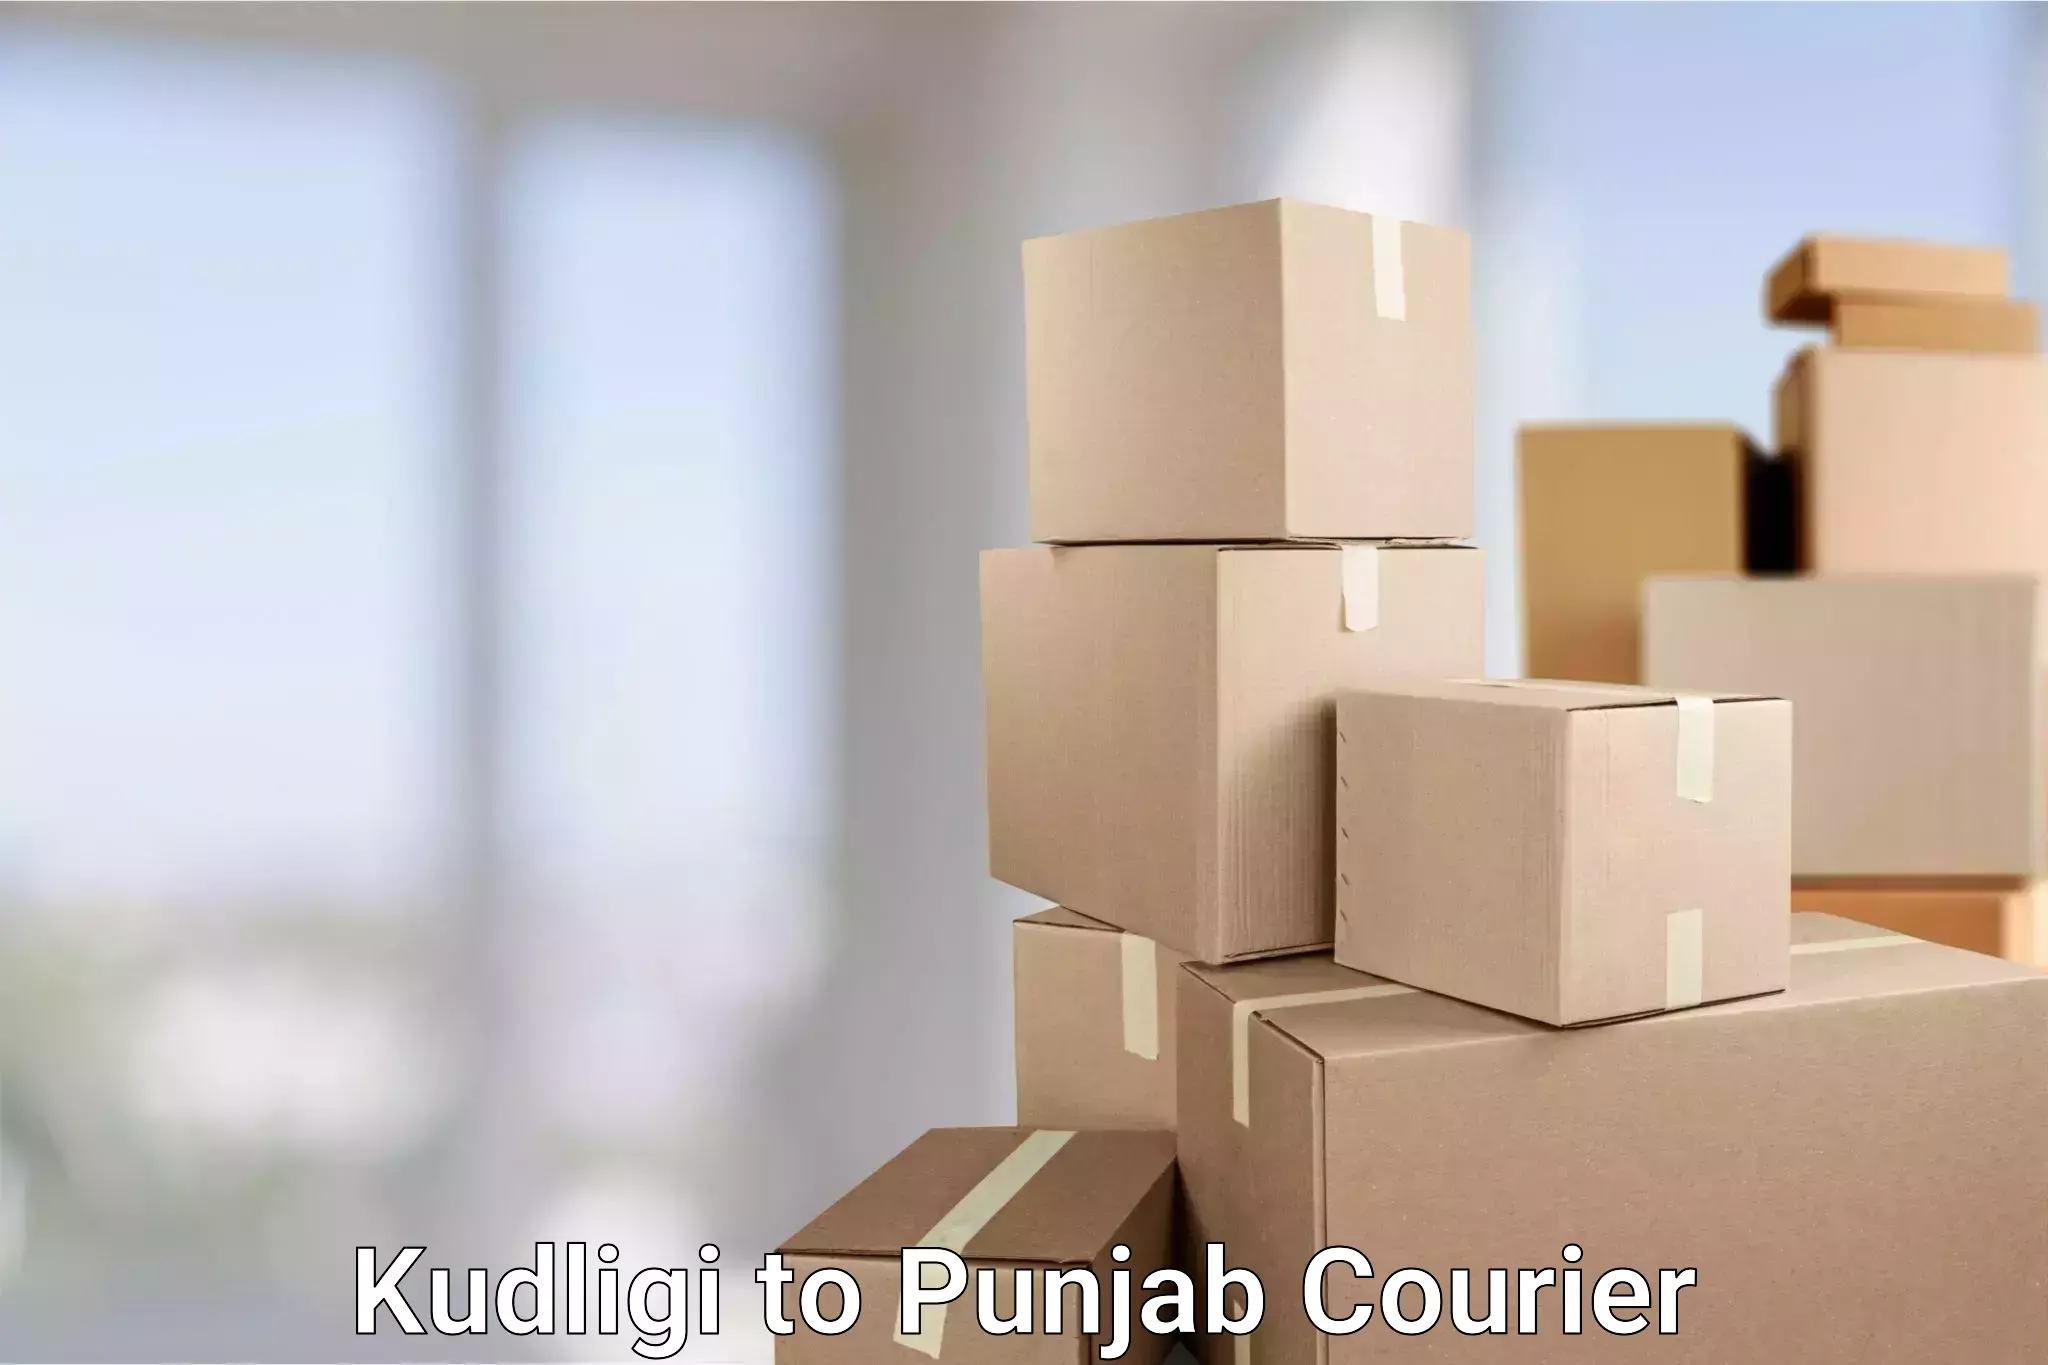 Comprehensive logistics solutions Kudligi to Khanna